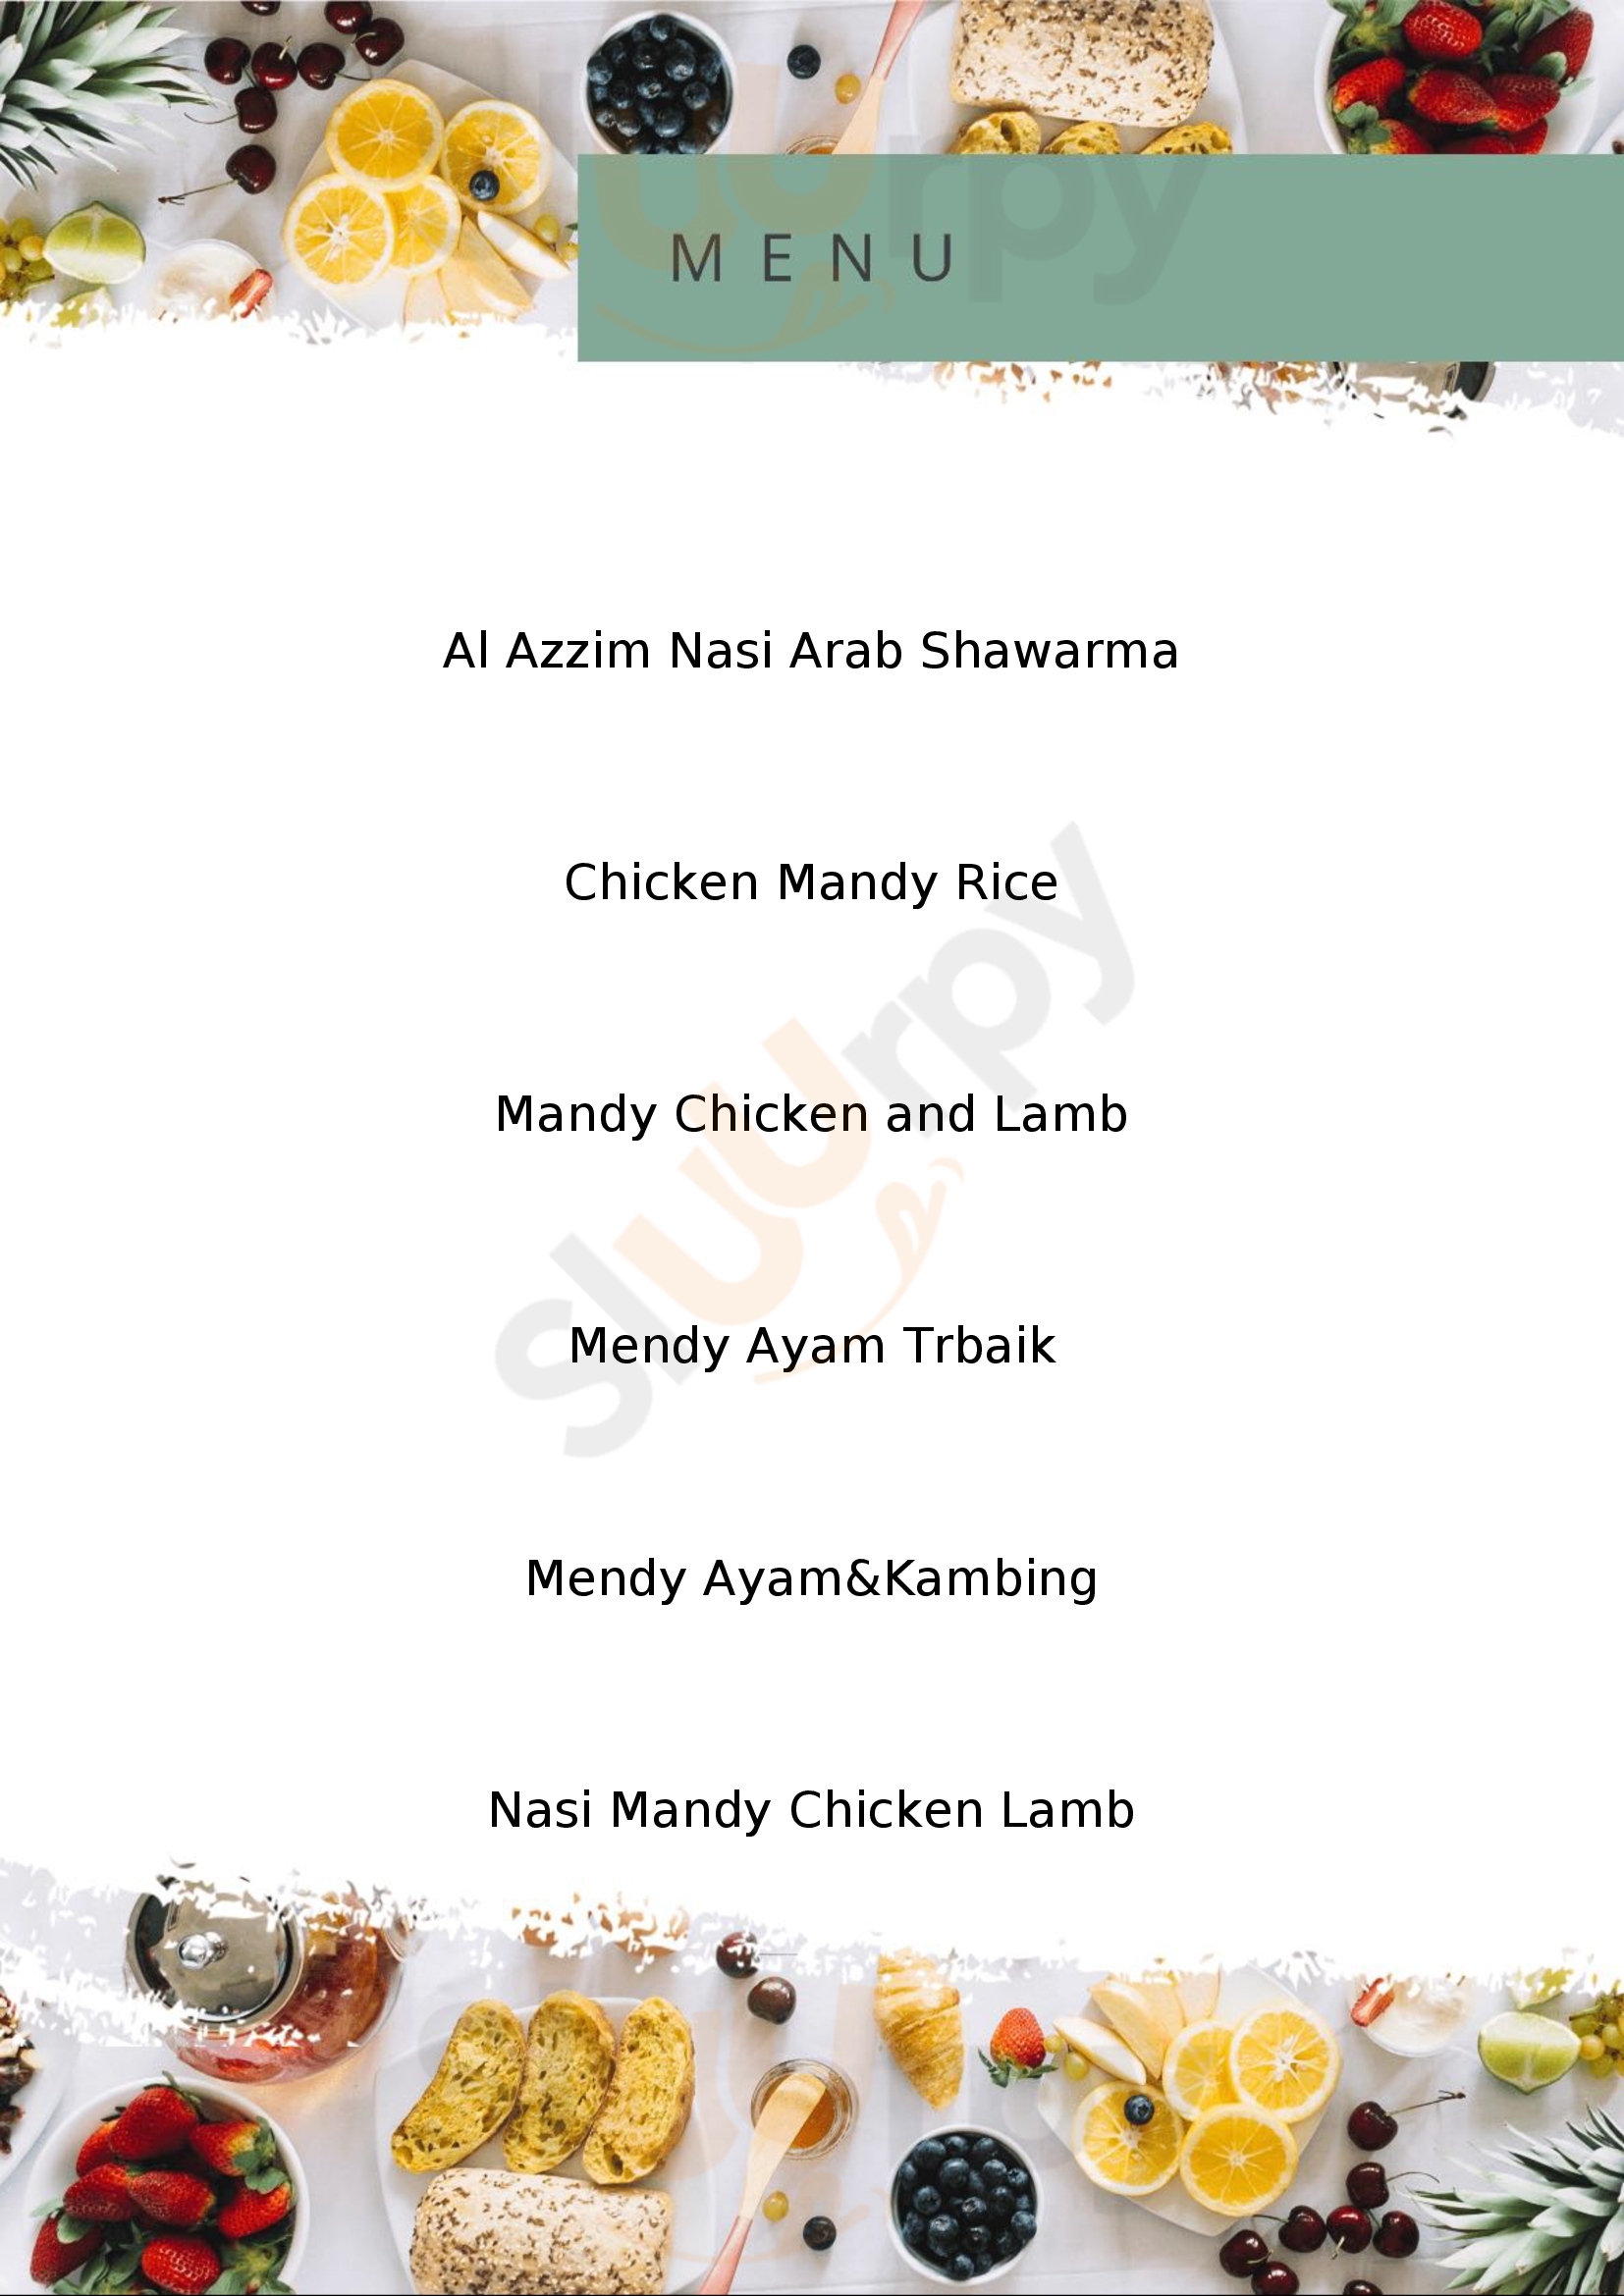 Restoran Arabian Mendy Sungai Petani Menu - 1